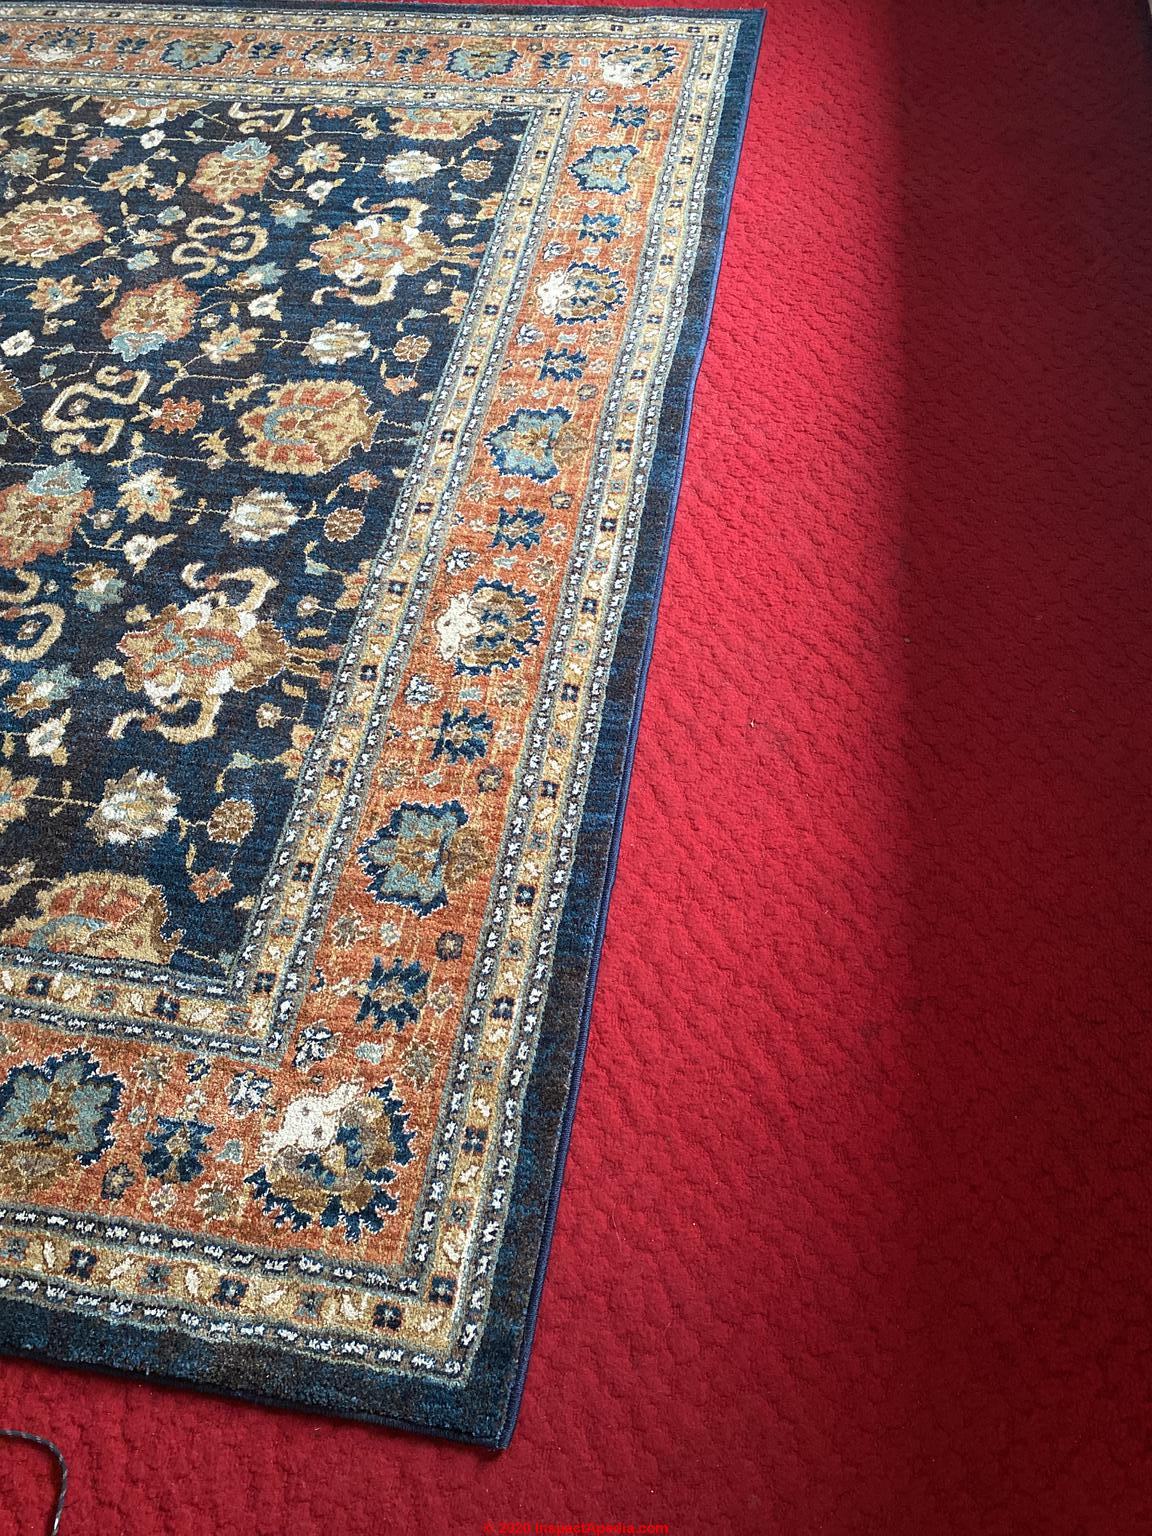 Carpet Stain Diagnostic Faqs